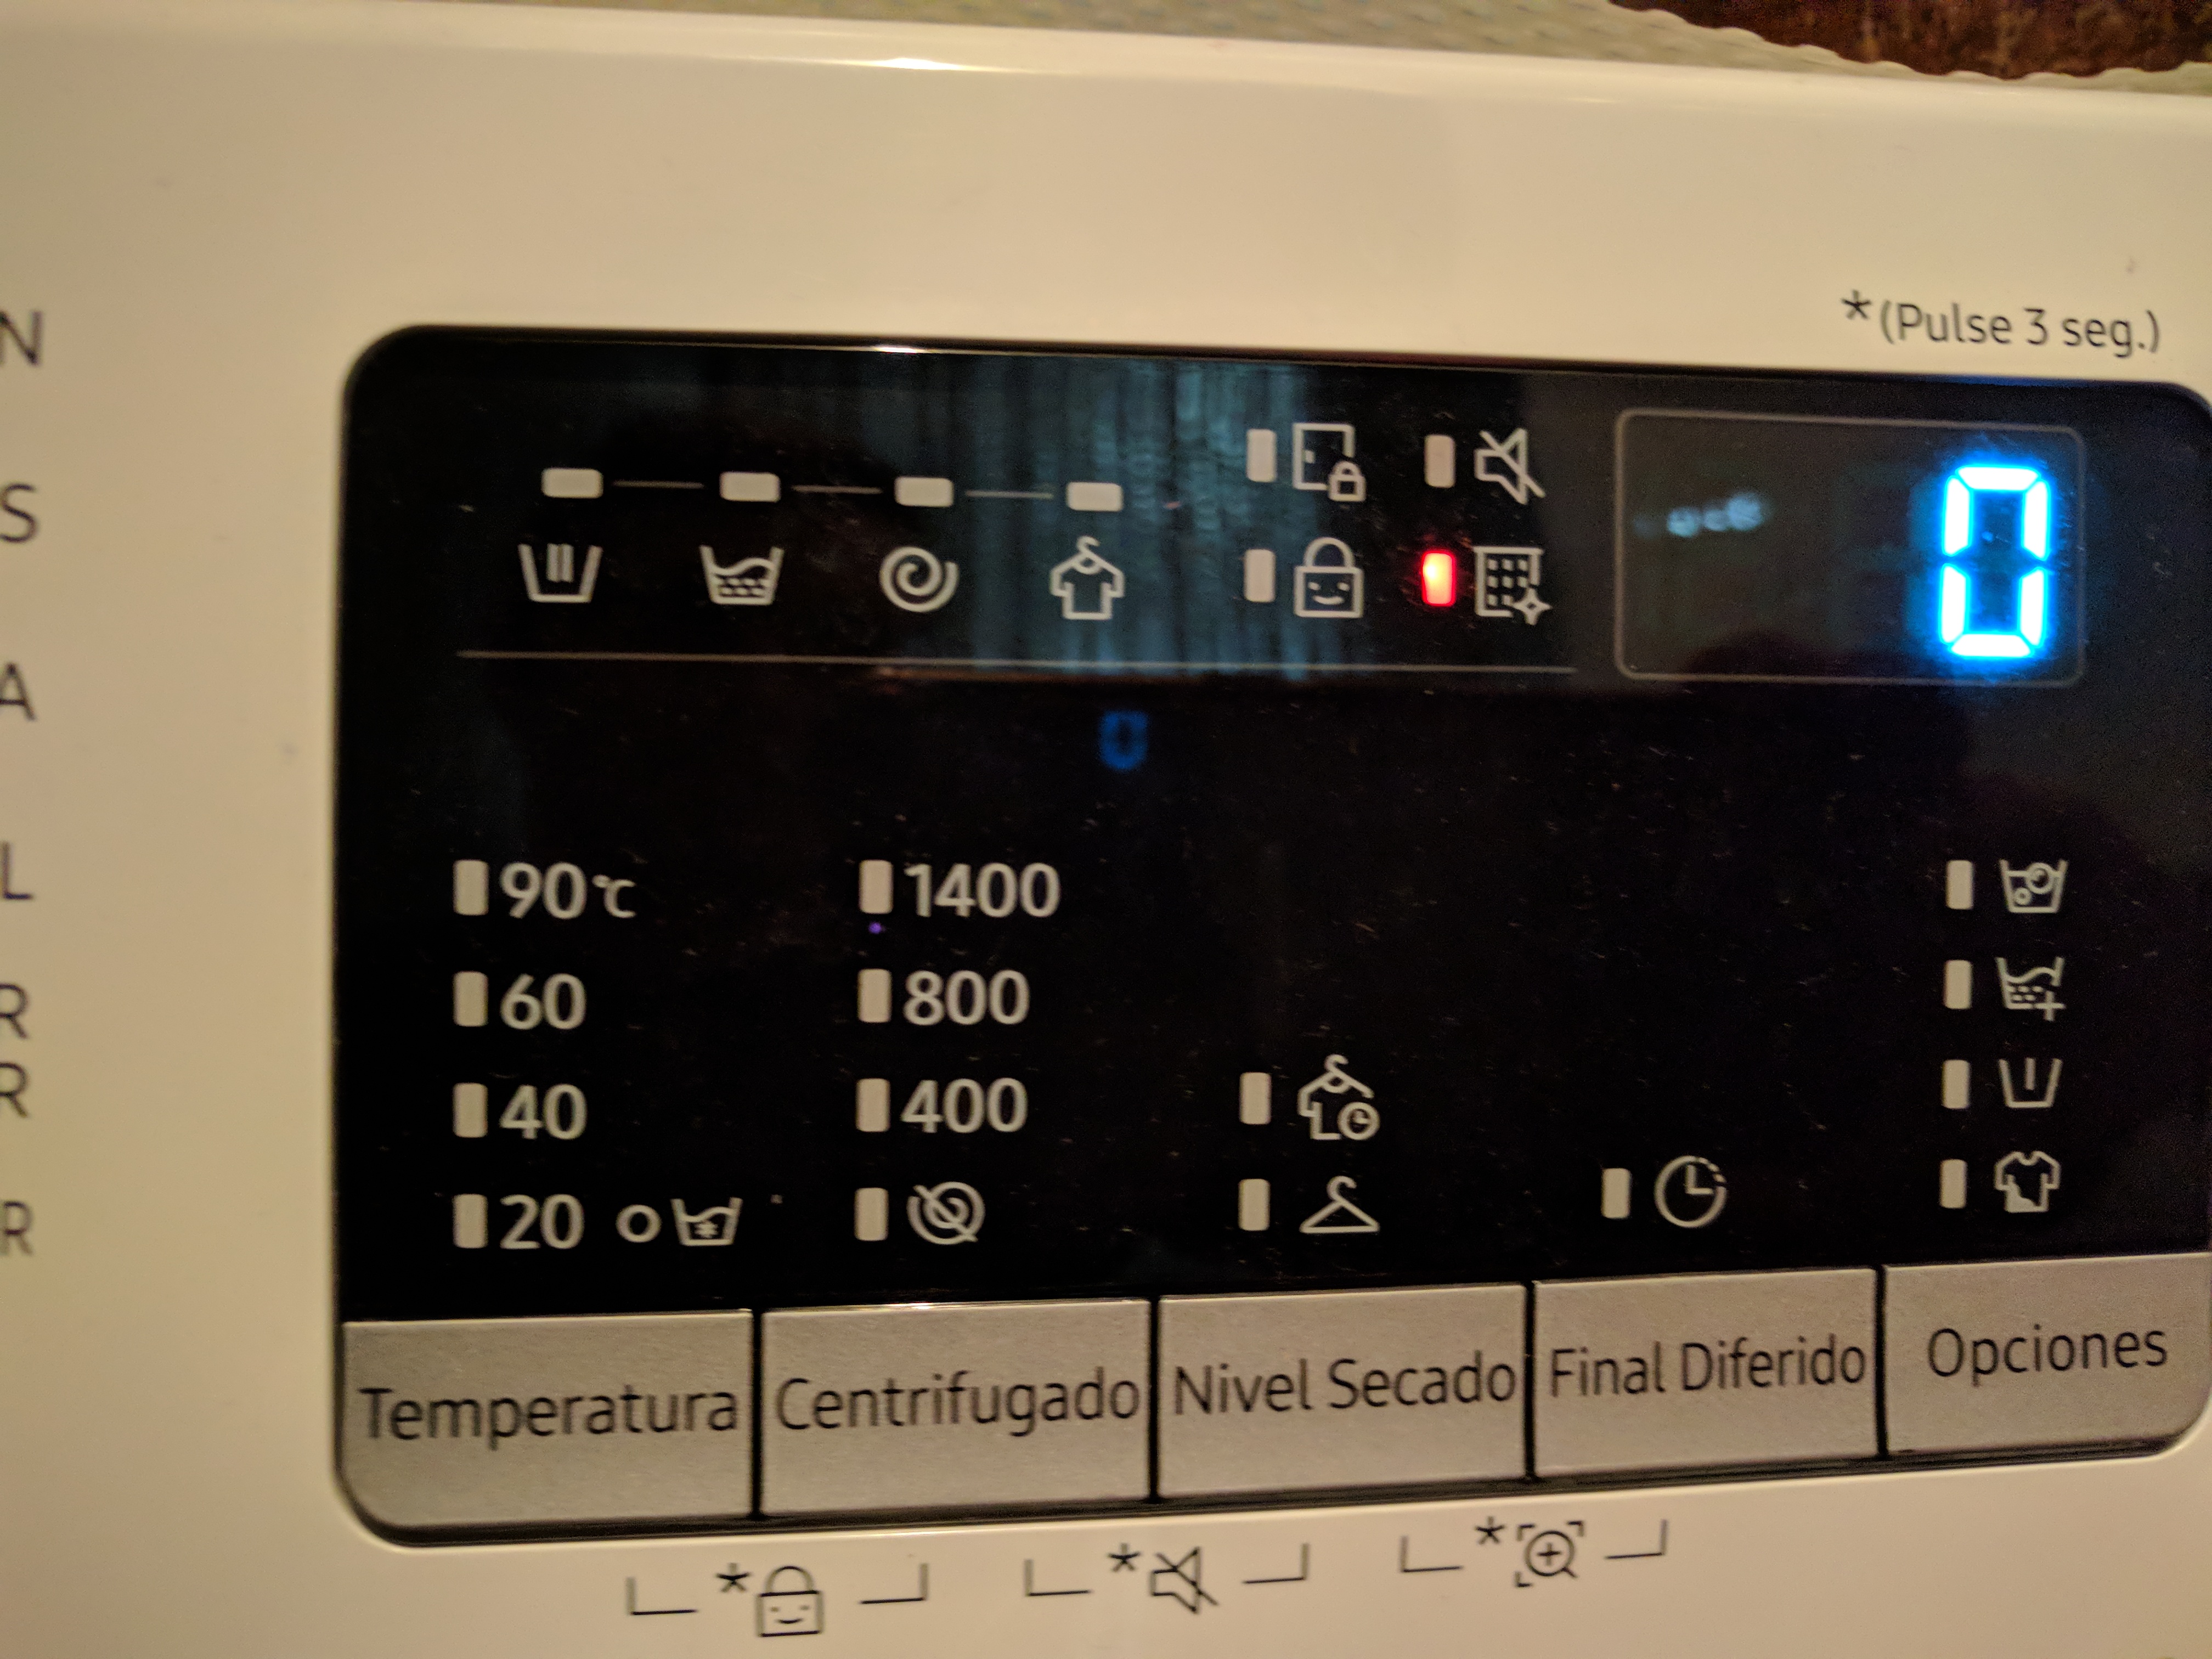 Solucionado: Error en display lavadora wd80m4 - Samsung Community